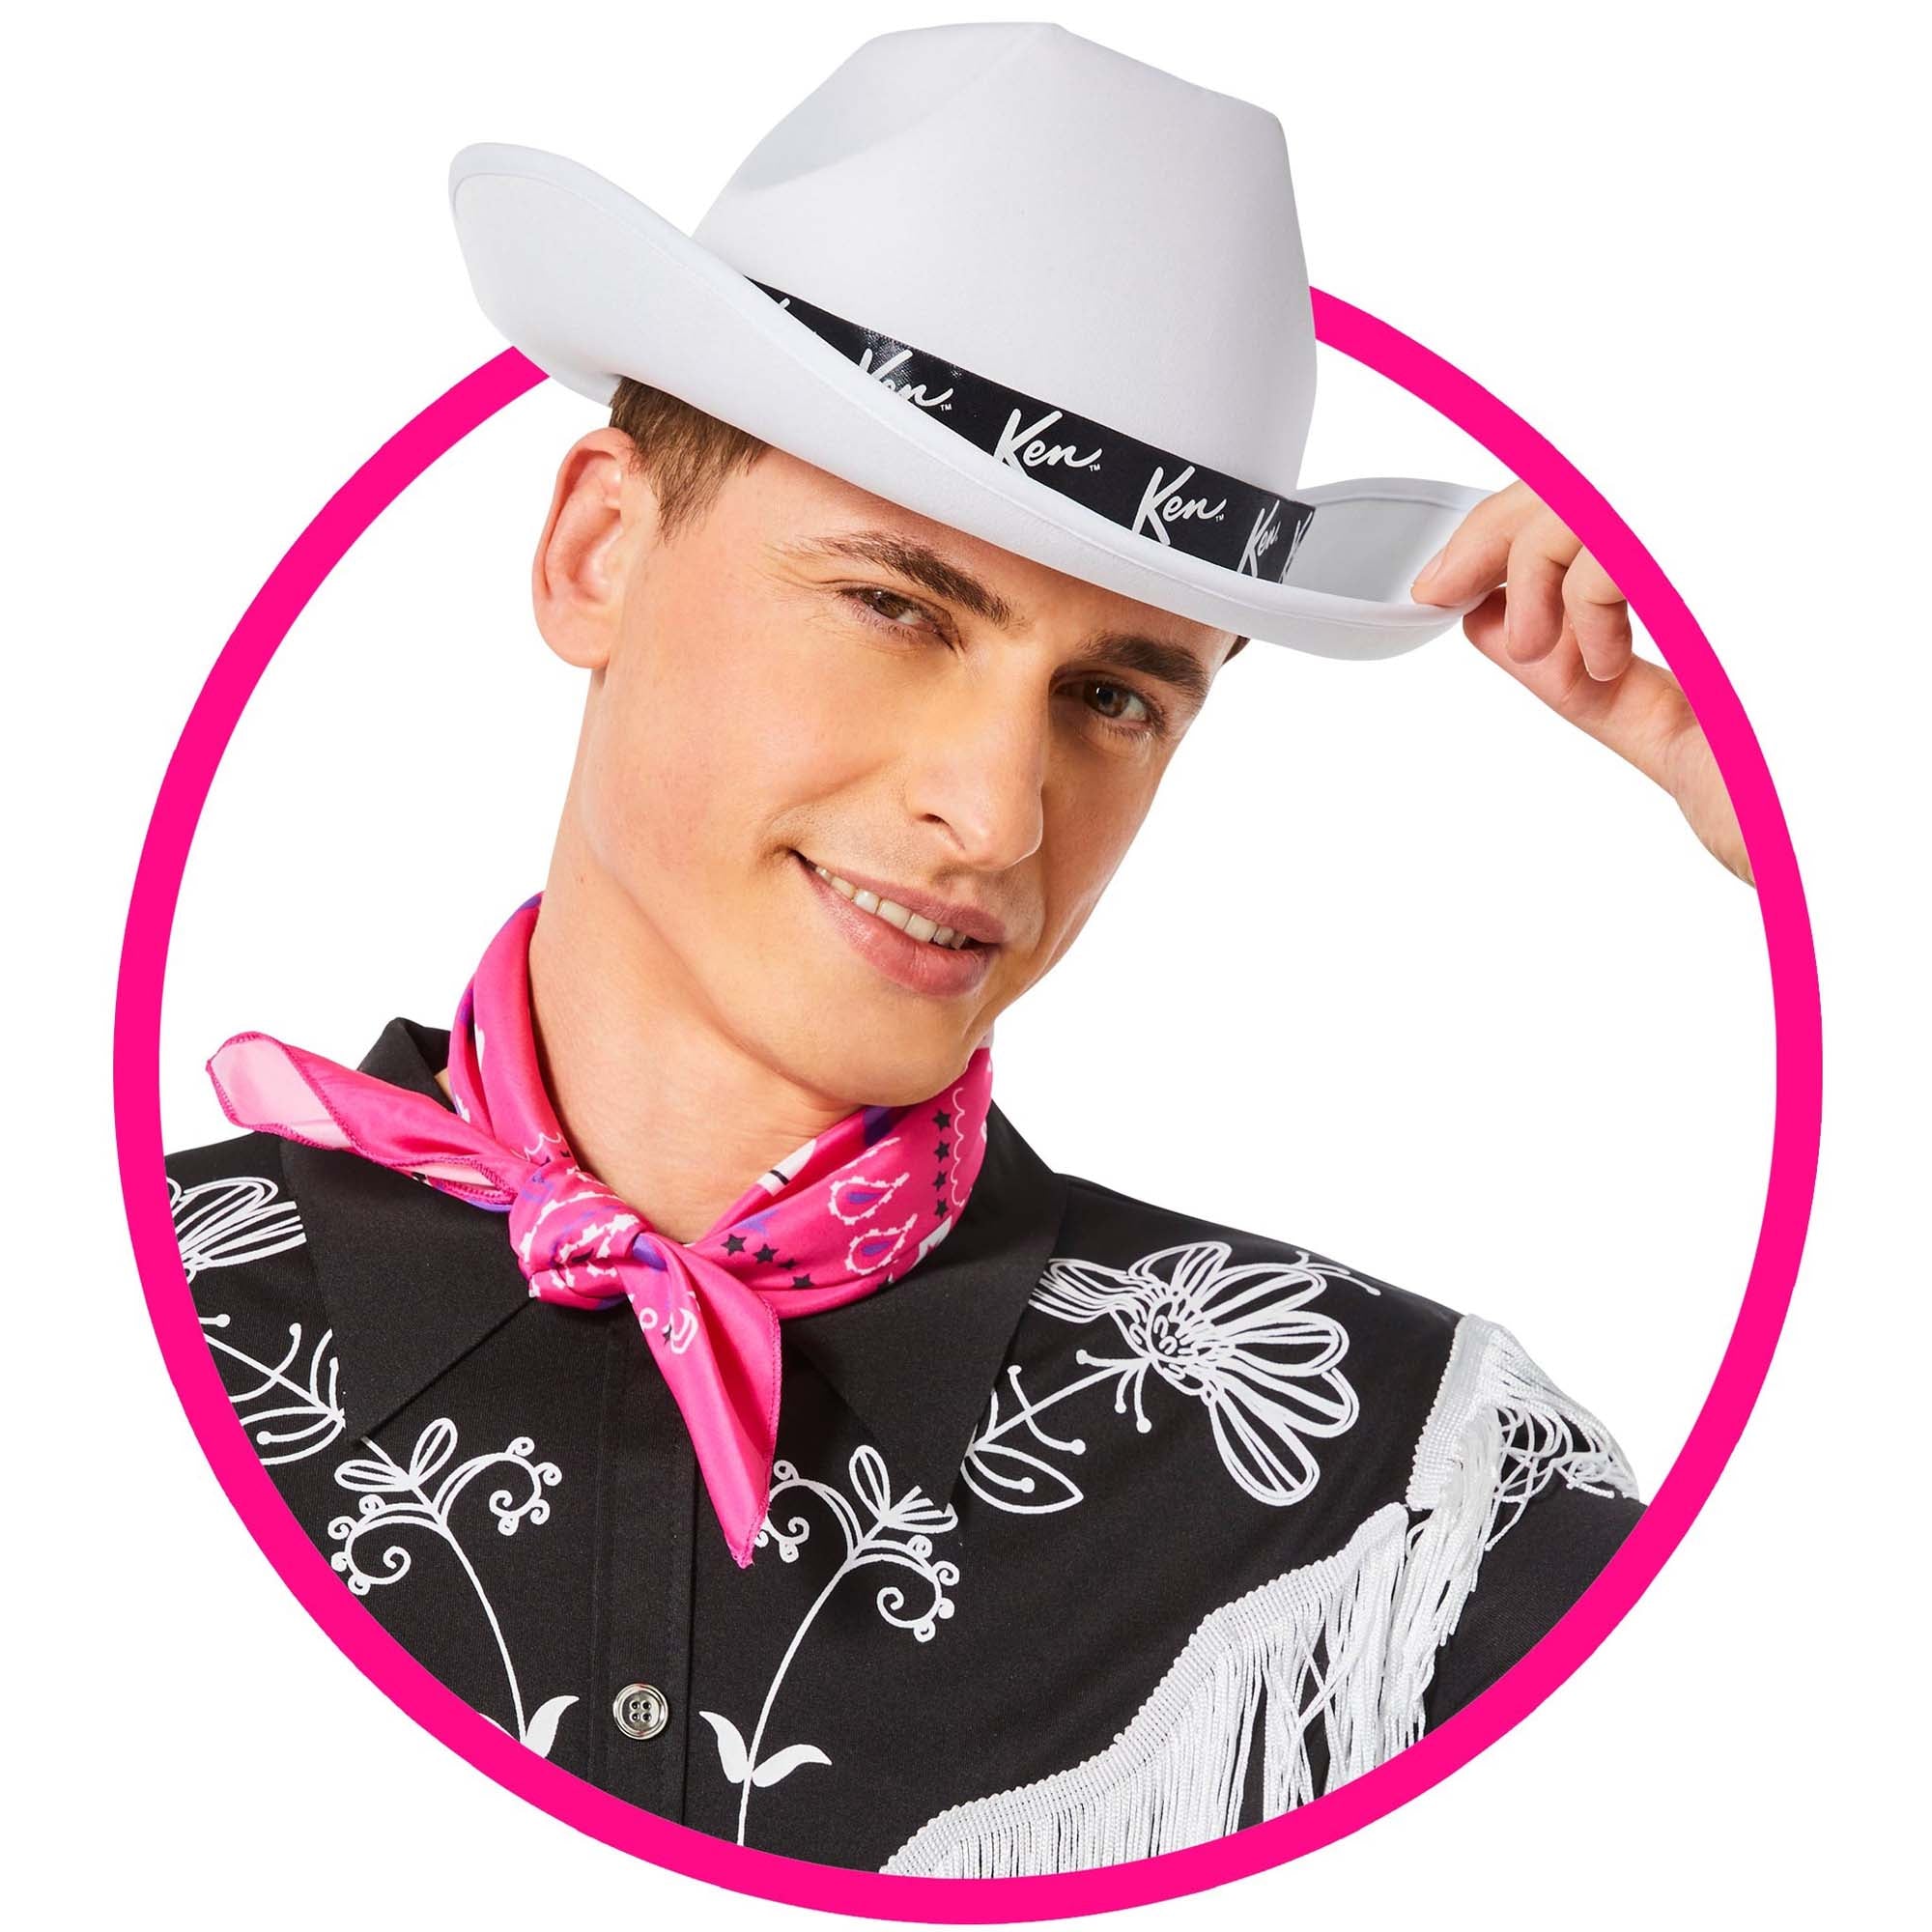 Cowboy Ken -  Canada